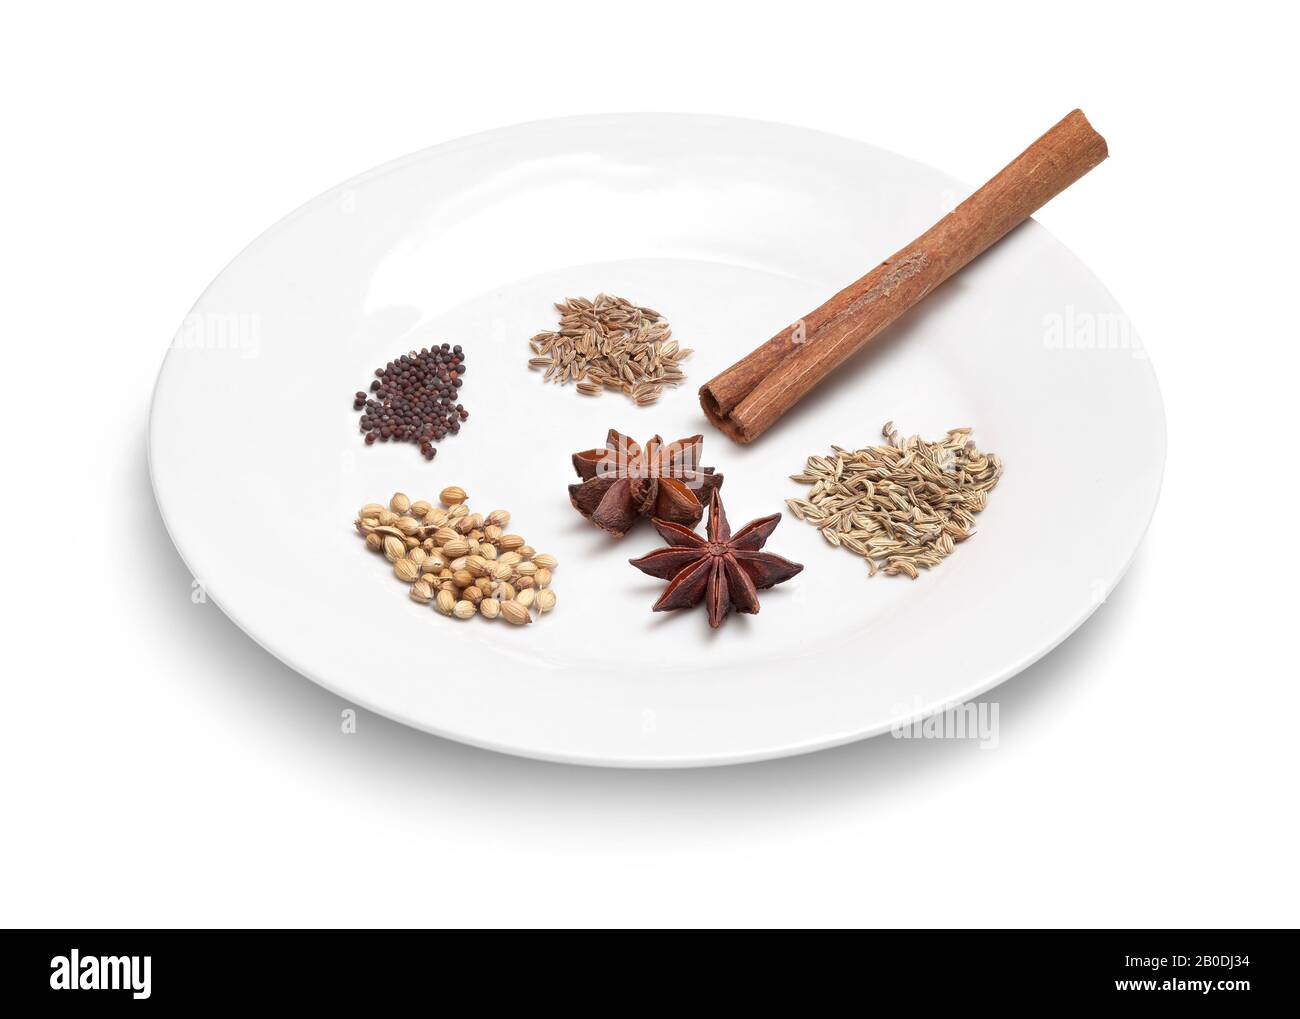 Eine kleine Auswahl an beliebten Gewürzen auf einem weißen Teller, Fenchelsamen, Kreuzkümmelsamen, Sternanis, Senfsamen, Zimtrinde Stockfoto